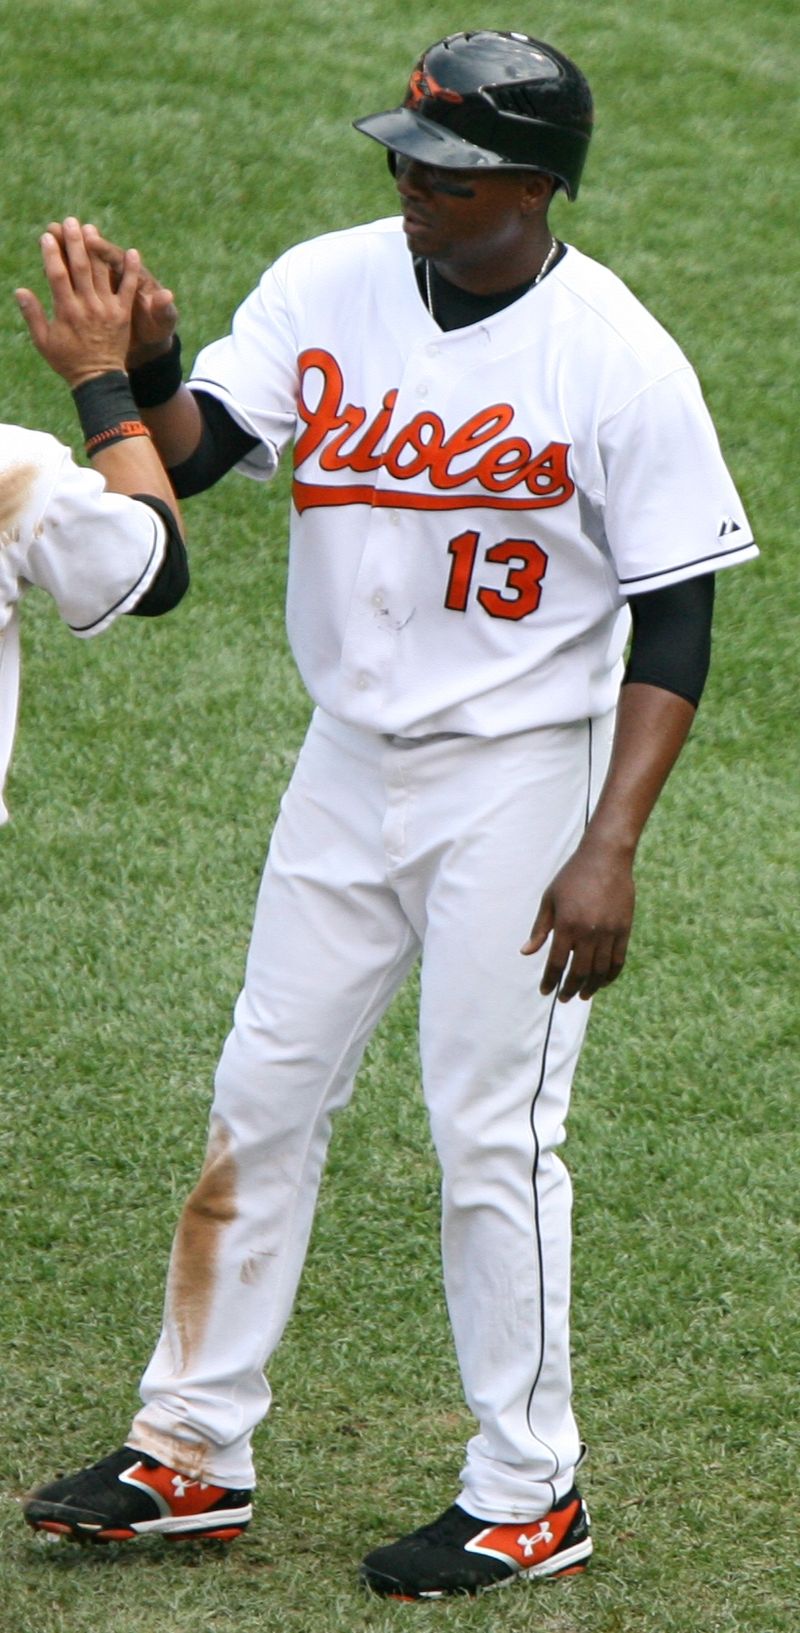 Baltimore Orioles - Wikipedia